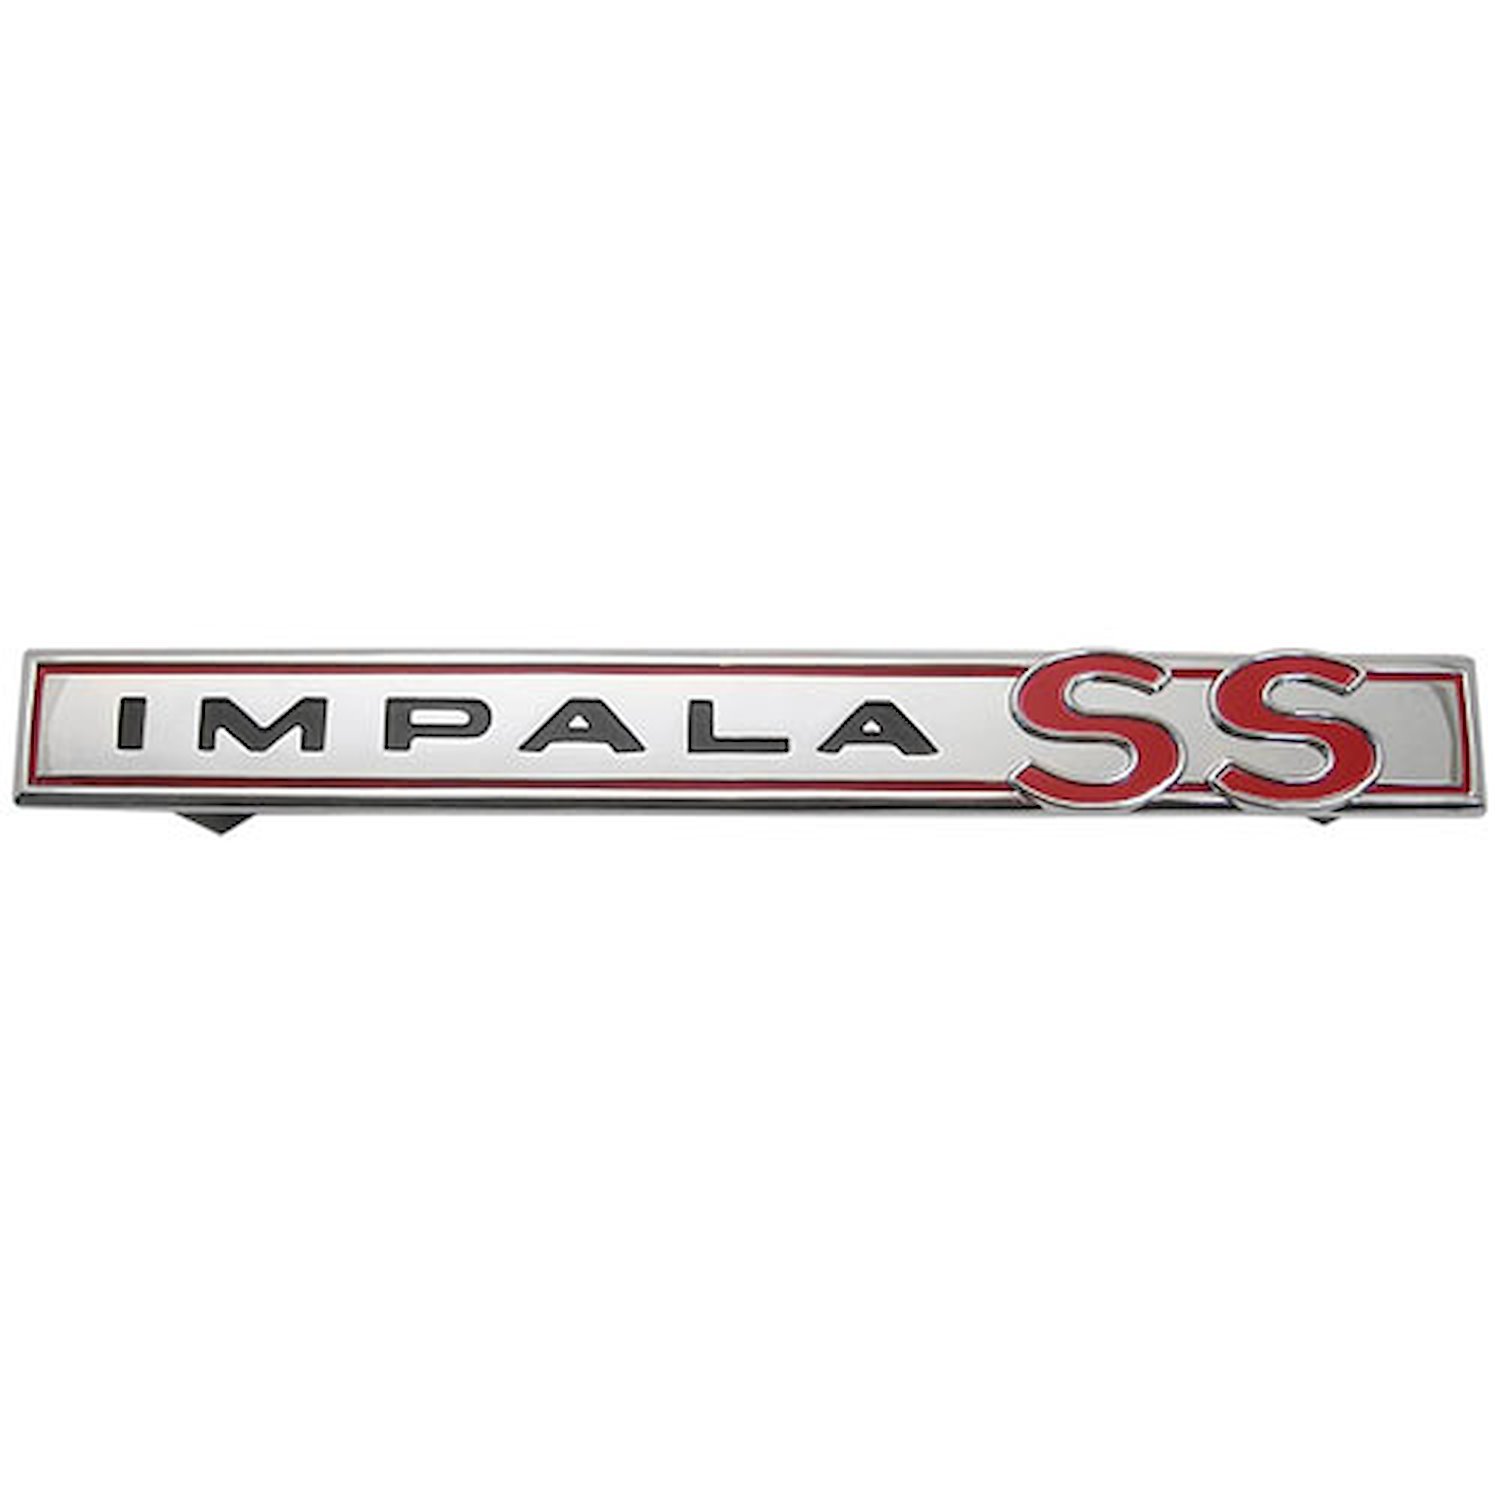 Trunk Lid Emblem 1964 Chevy Impala SS